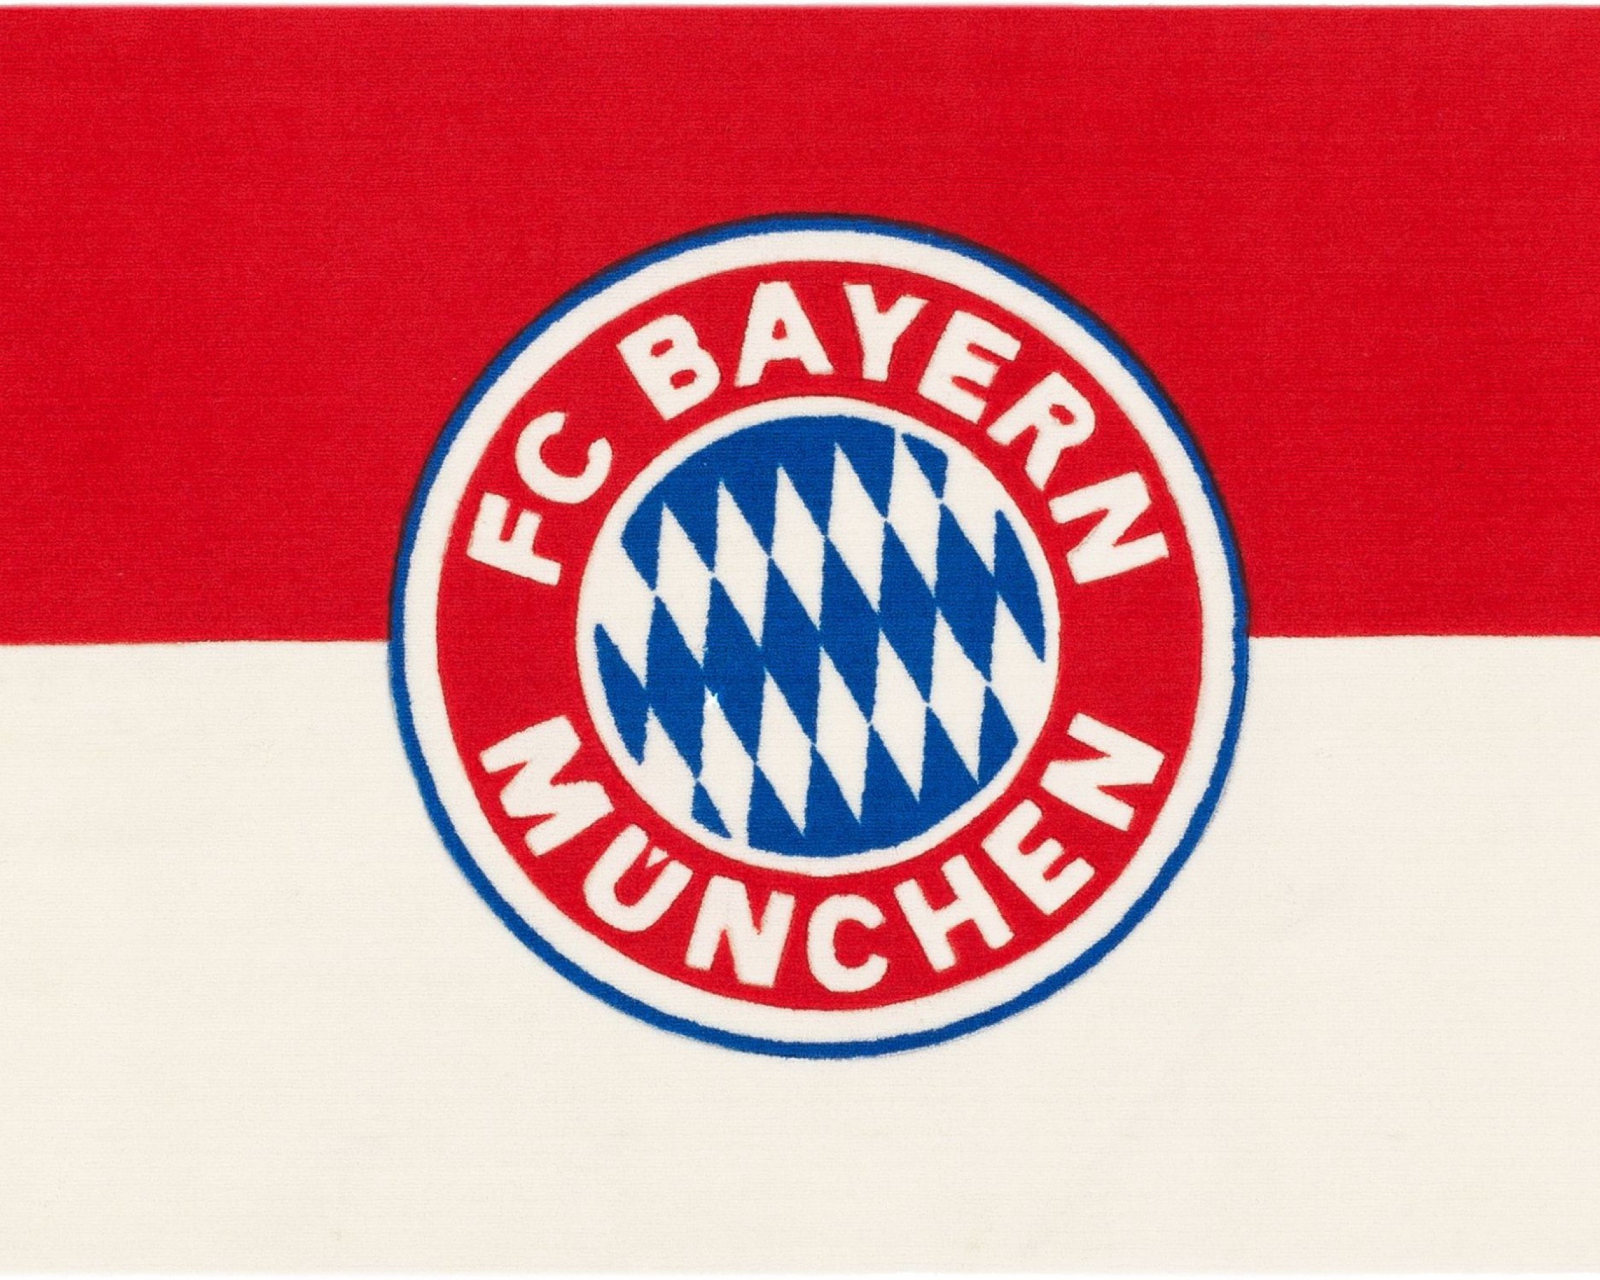 Das Fc Bayern Munchen Wallpaper 1600x1280